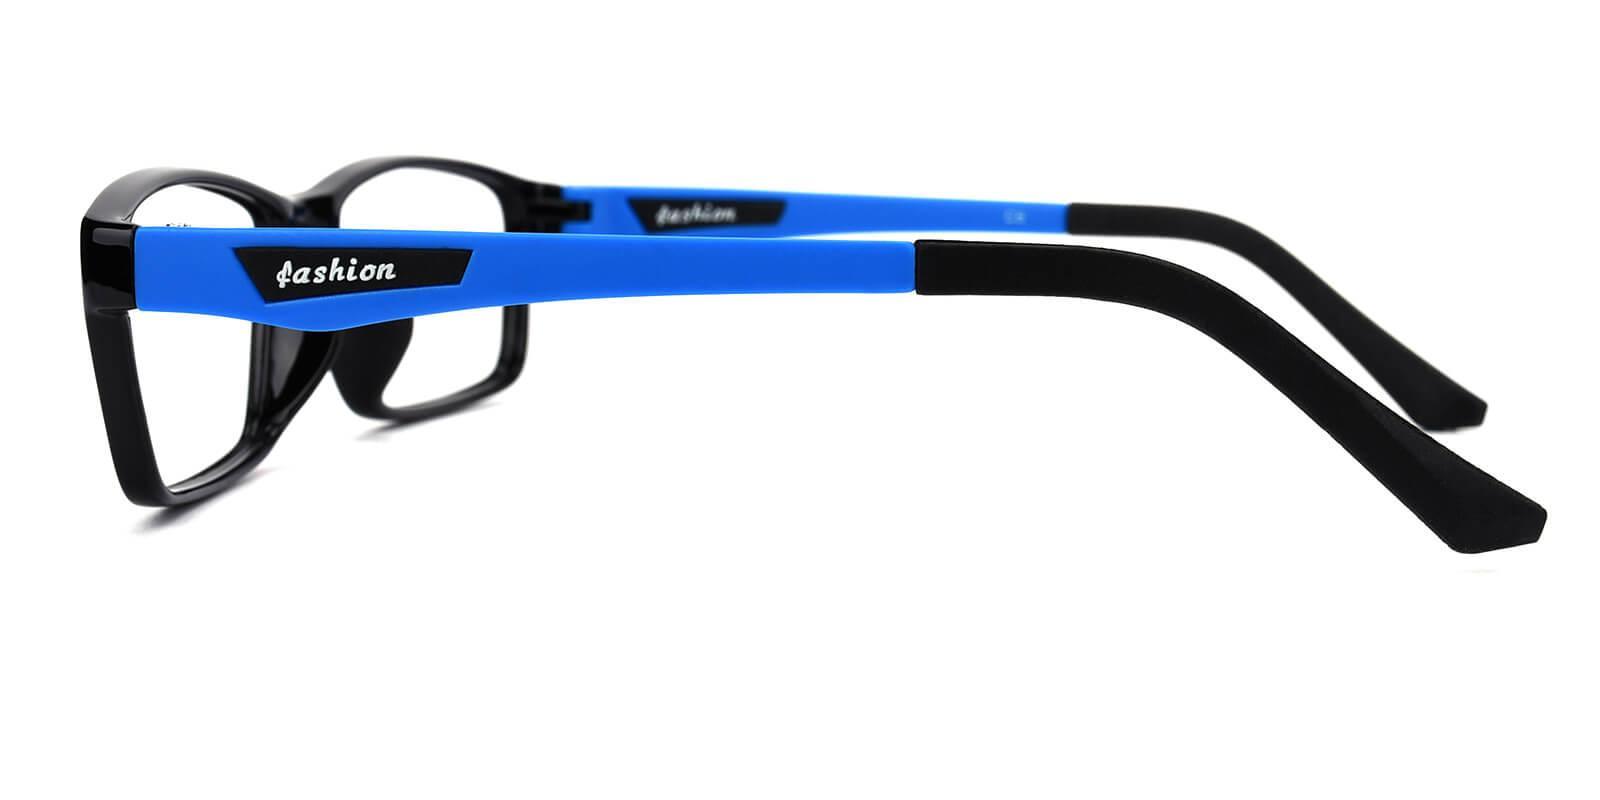 Eight Blue TR SportsGlasses , UniversalBridgeFit Frames from ABBE Glasses